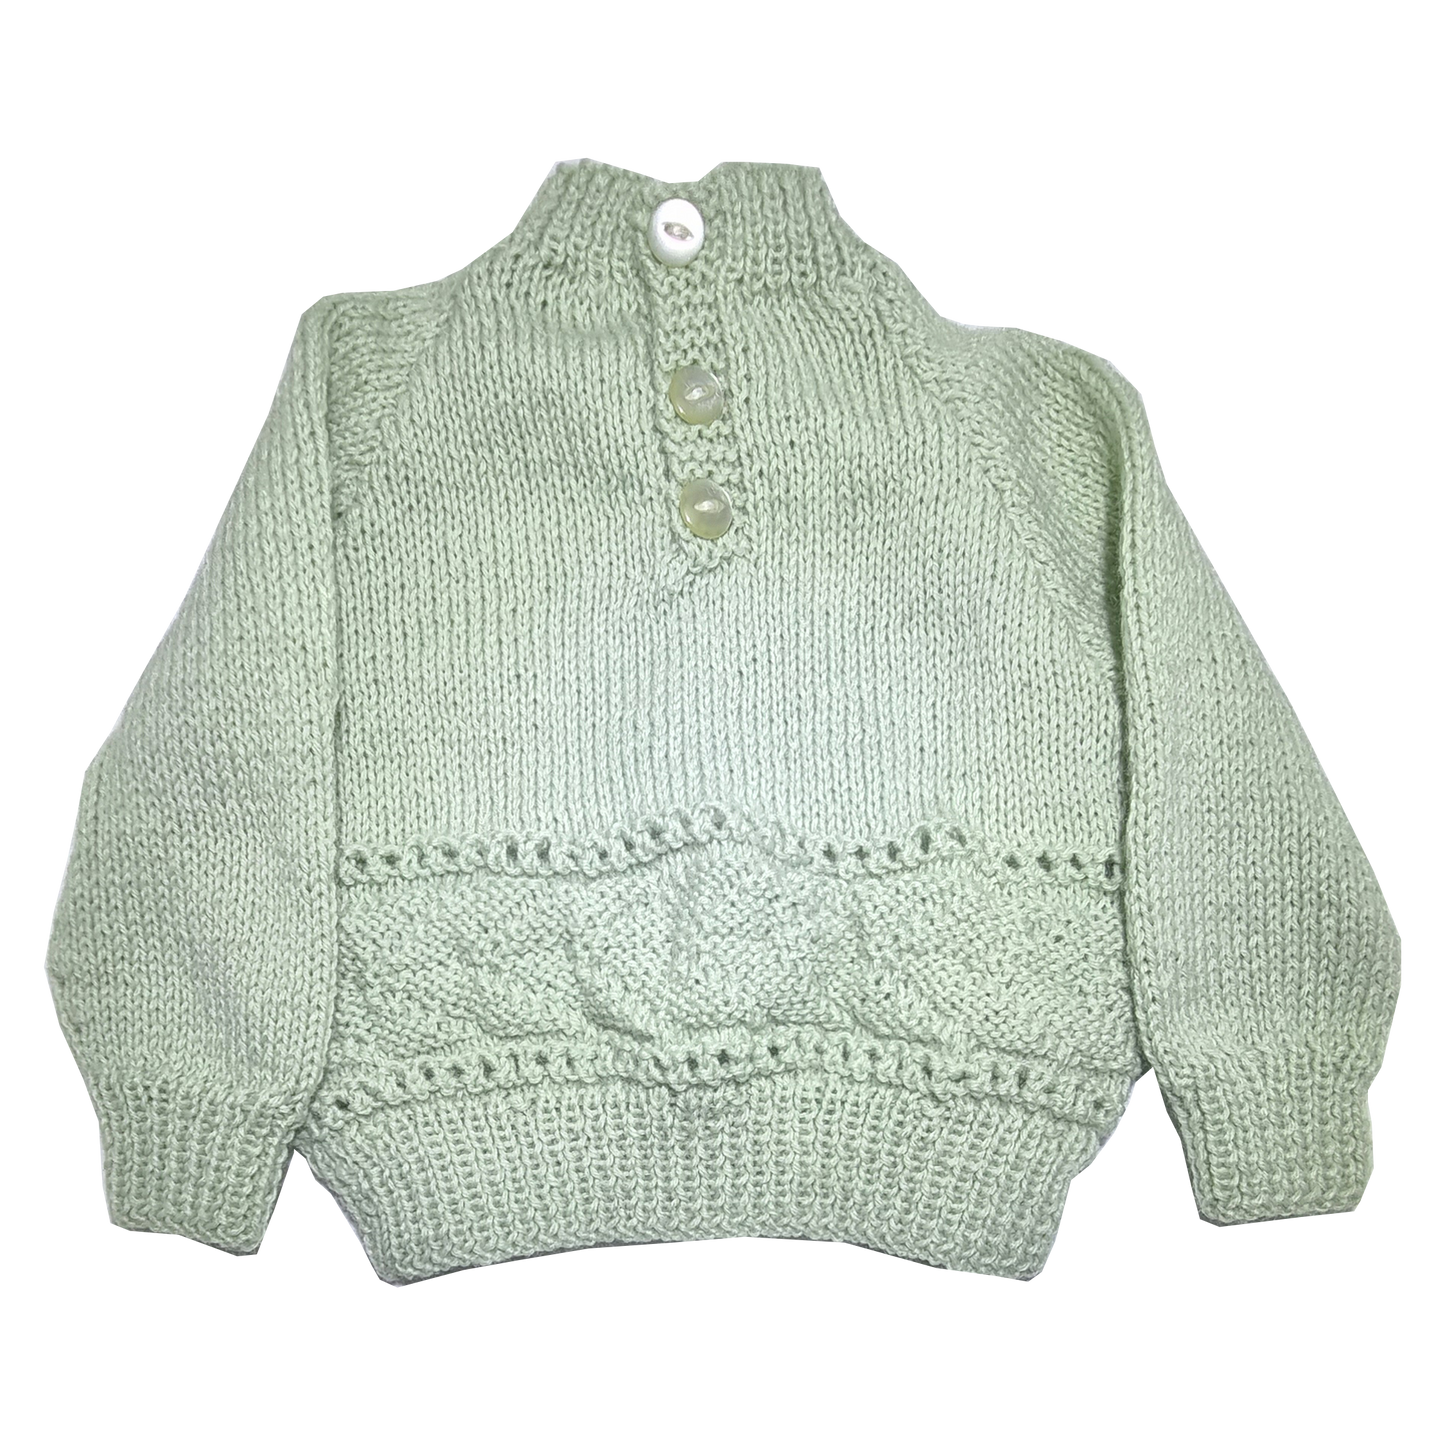 Hand Knitted Jumper Green Jumper (Approx 0-3 months)